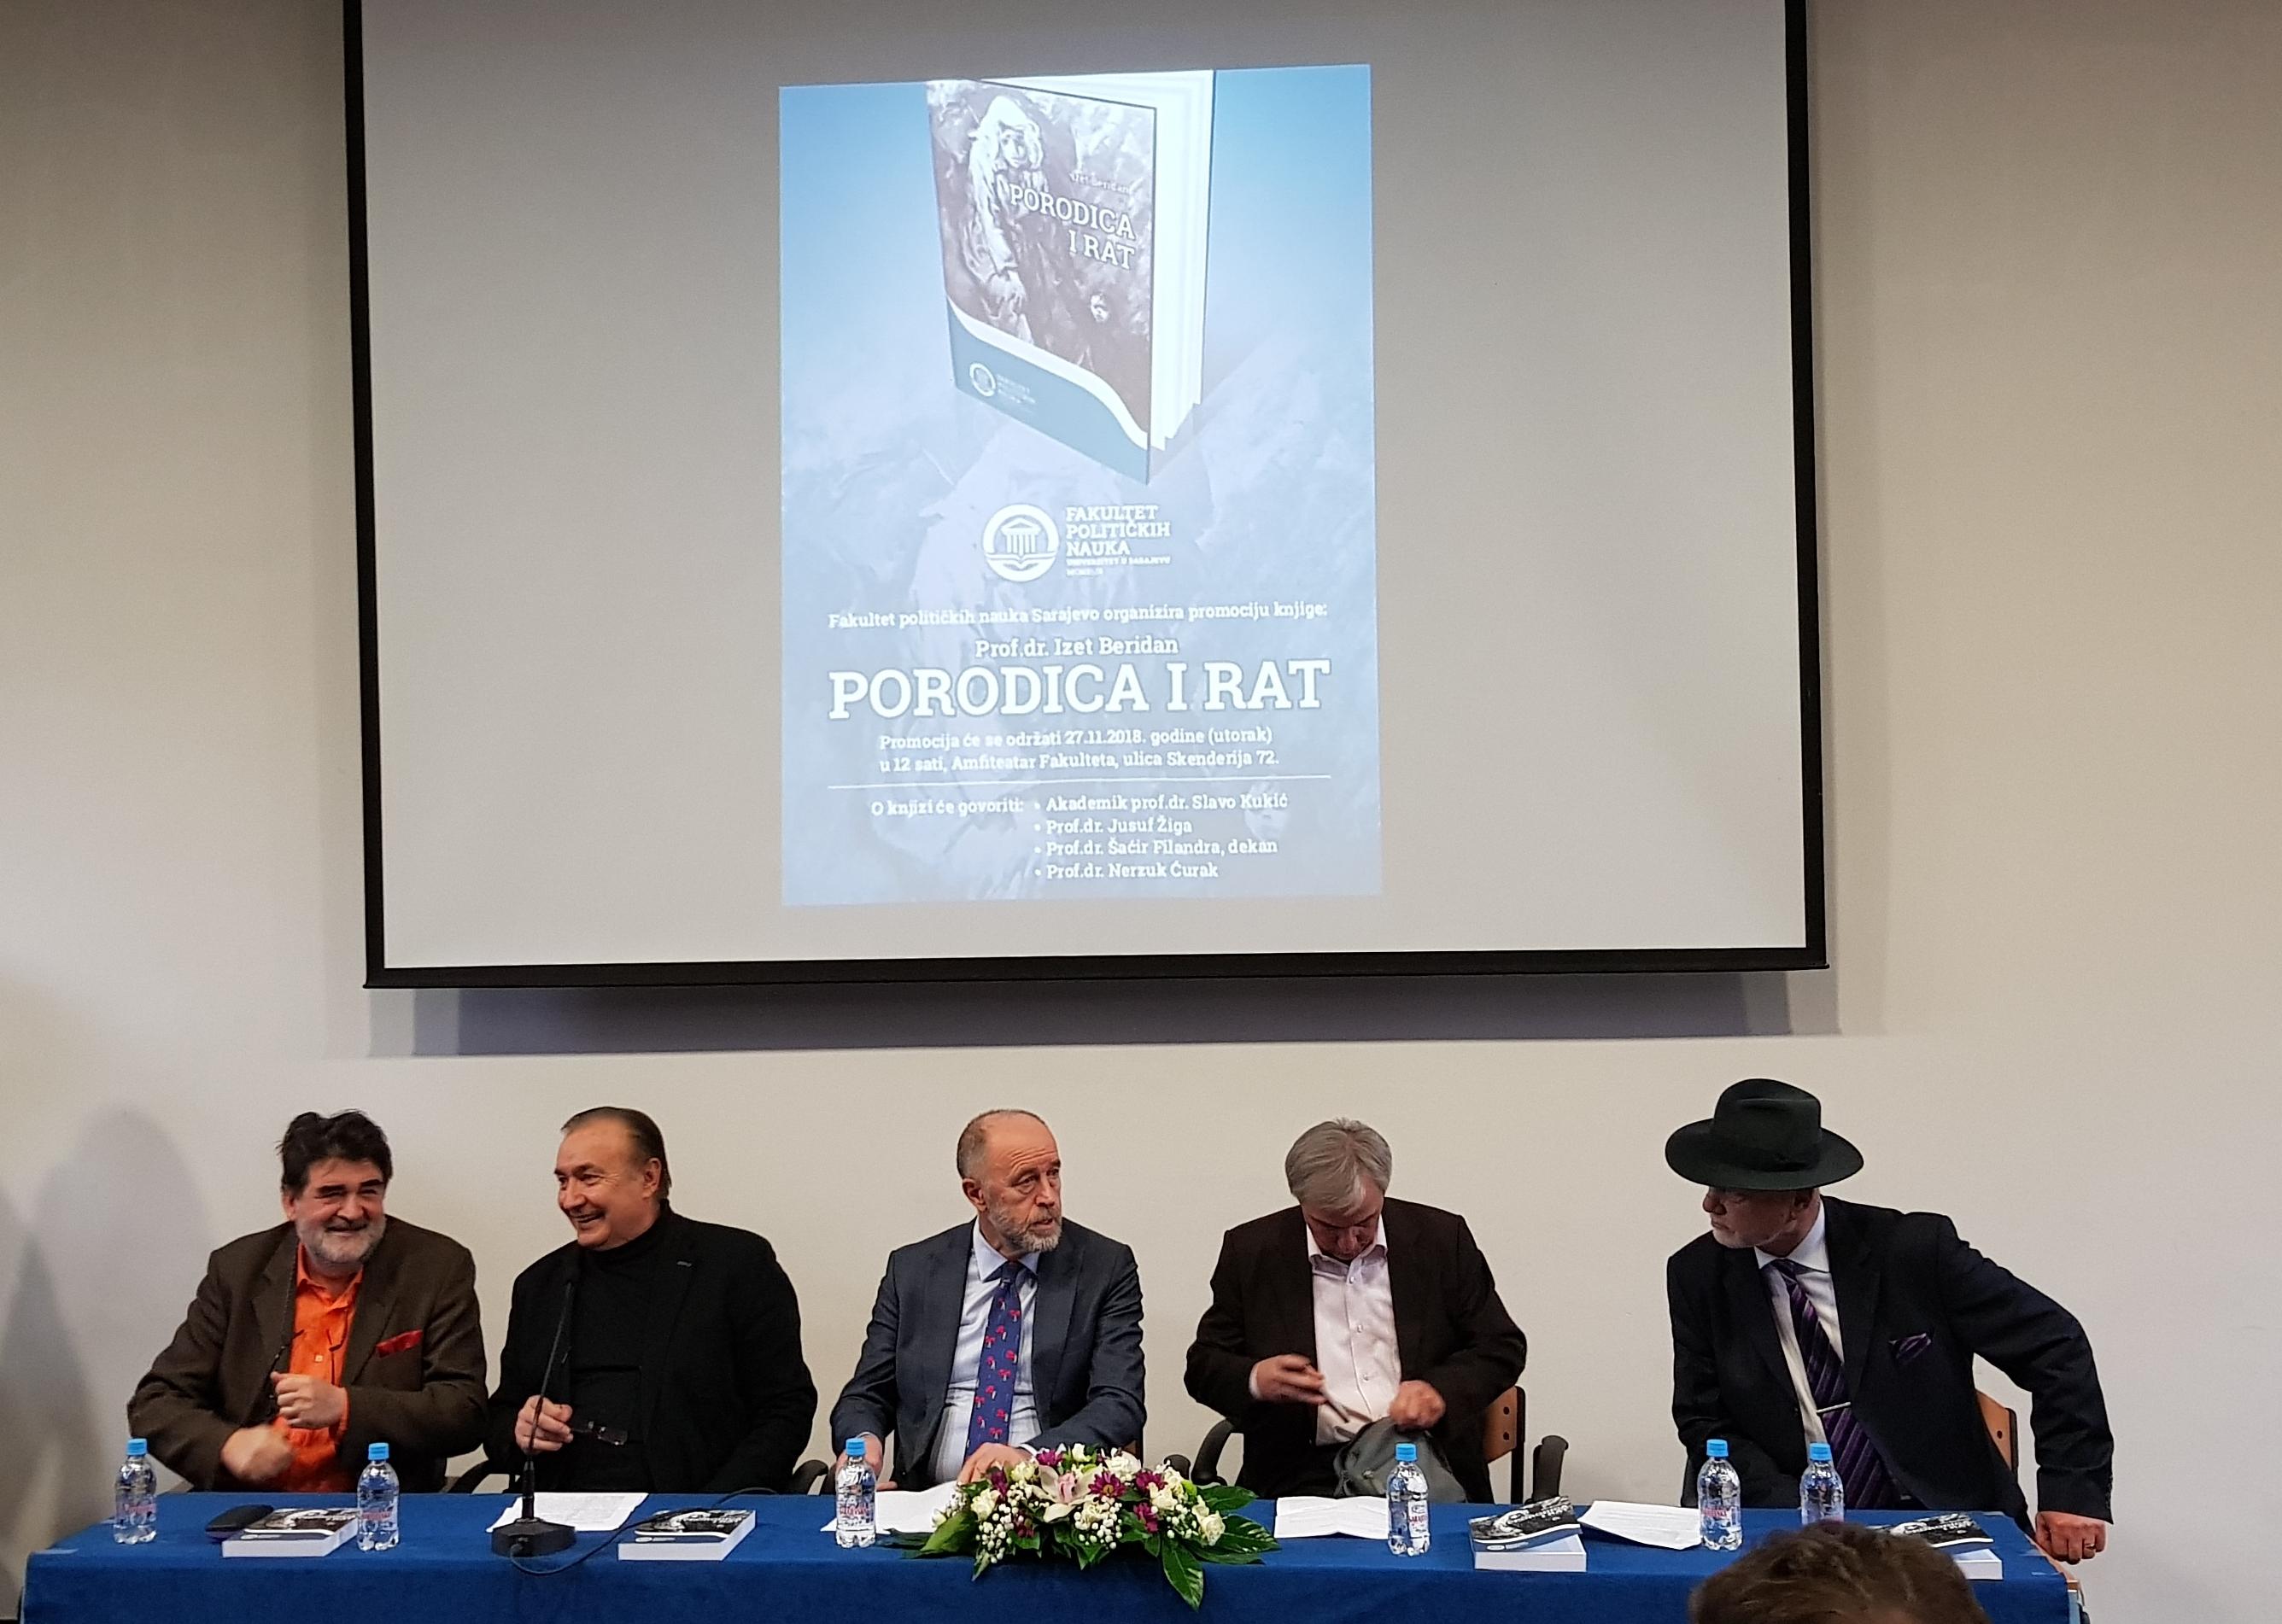 Promocija knjige "Porodica i rat" prof. dr. Izeta Beridana - Avaz